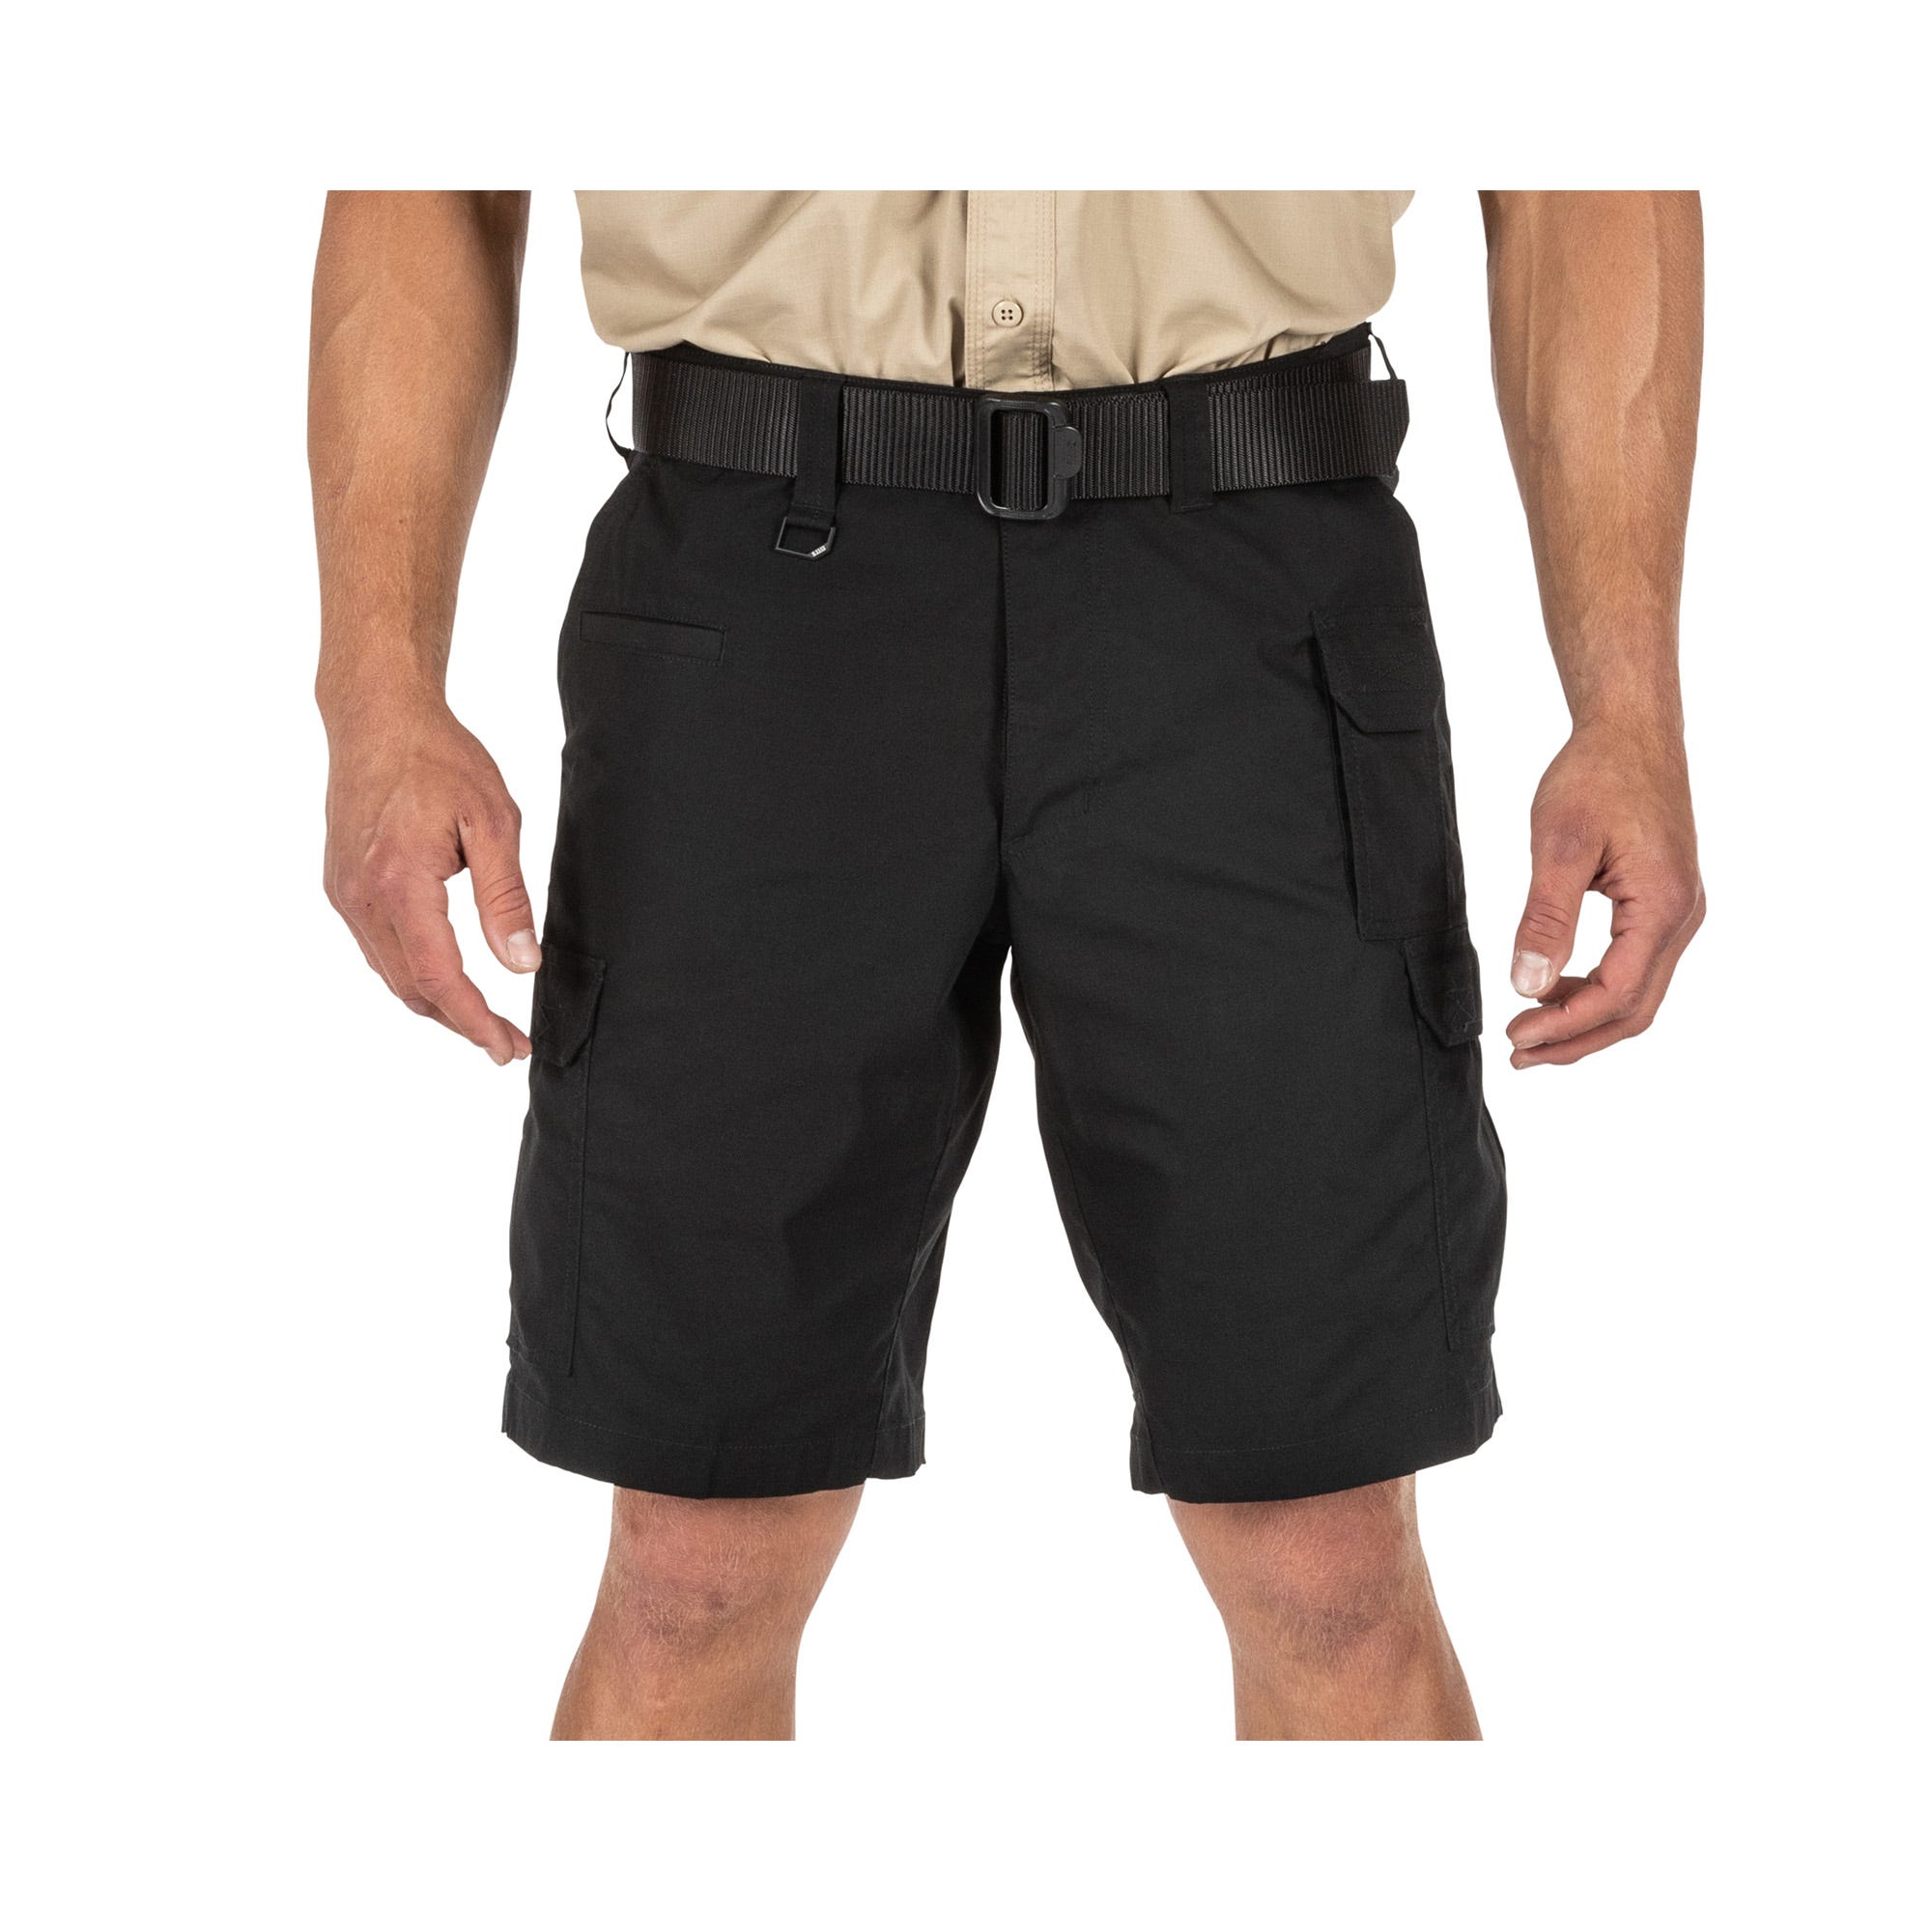 5.11 Tactical Mens Original Work Shorts Cotton Canvas 73285 Black size 36 